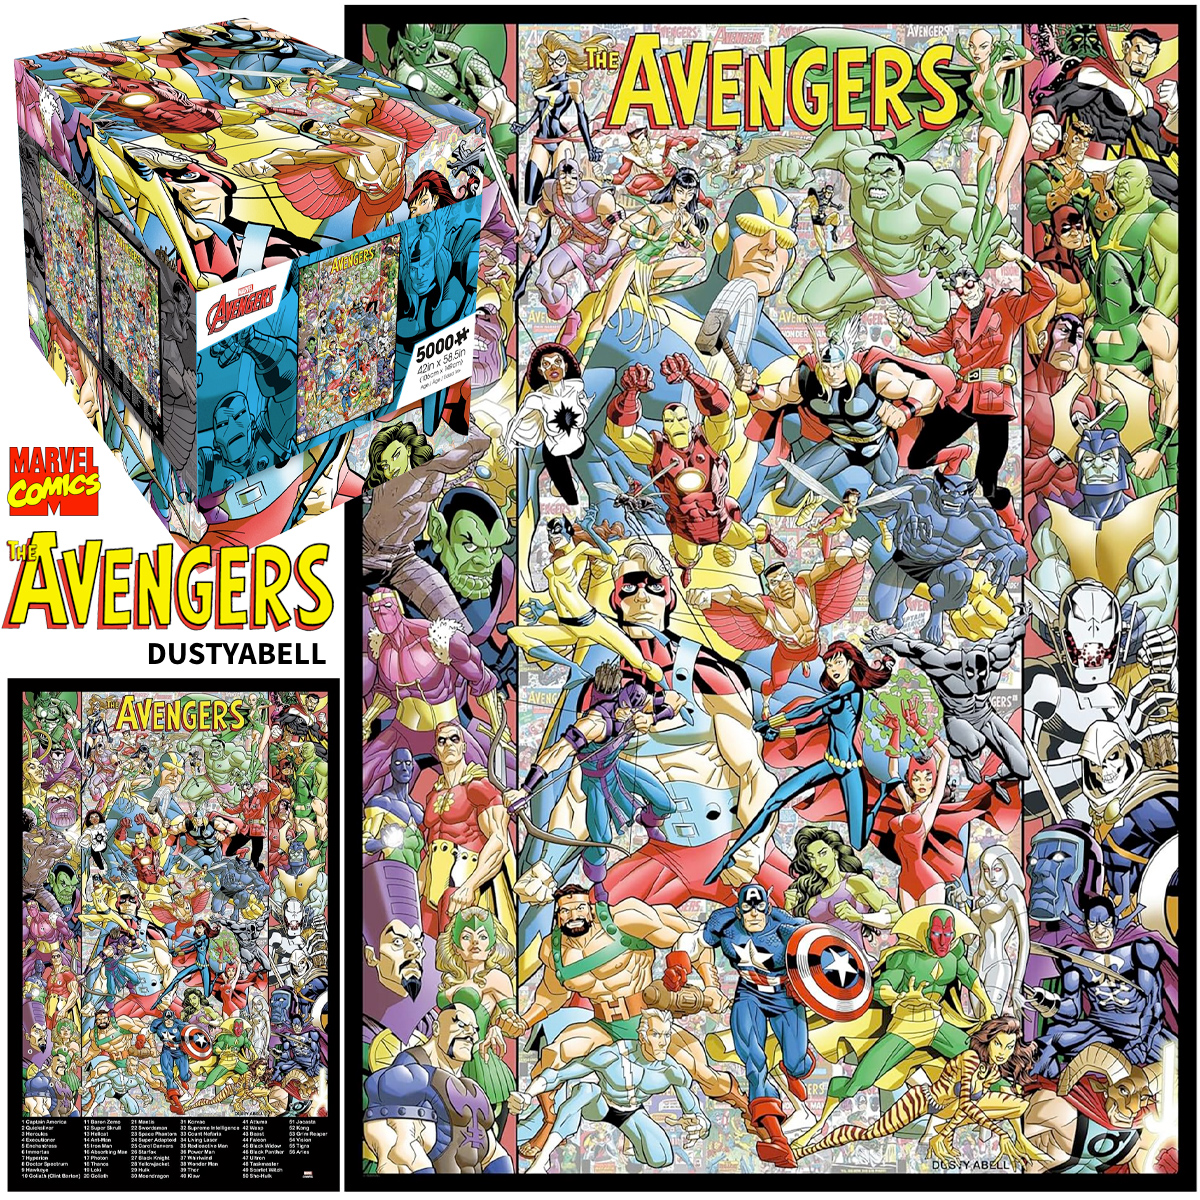 Quebra-Cabeça Gigante Marvel The Avengers 60 Anos com Arte de Dusty Abell 